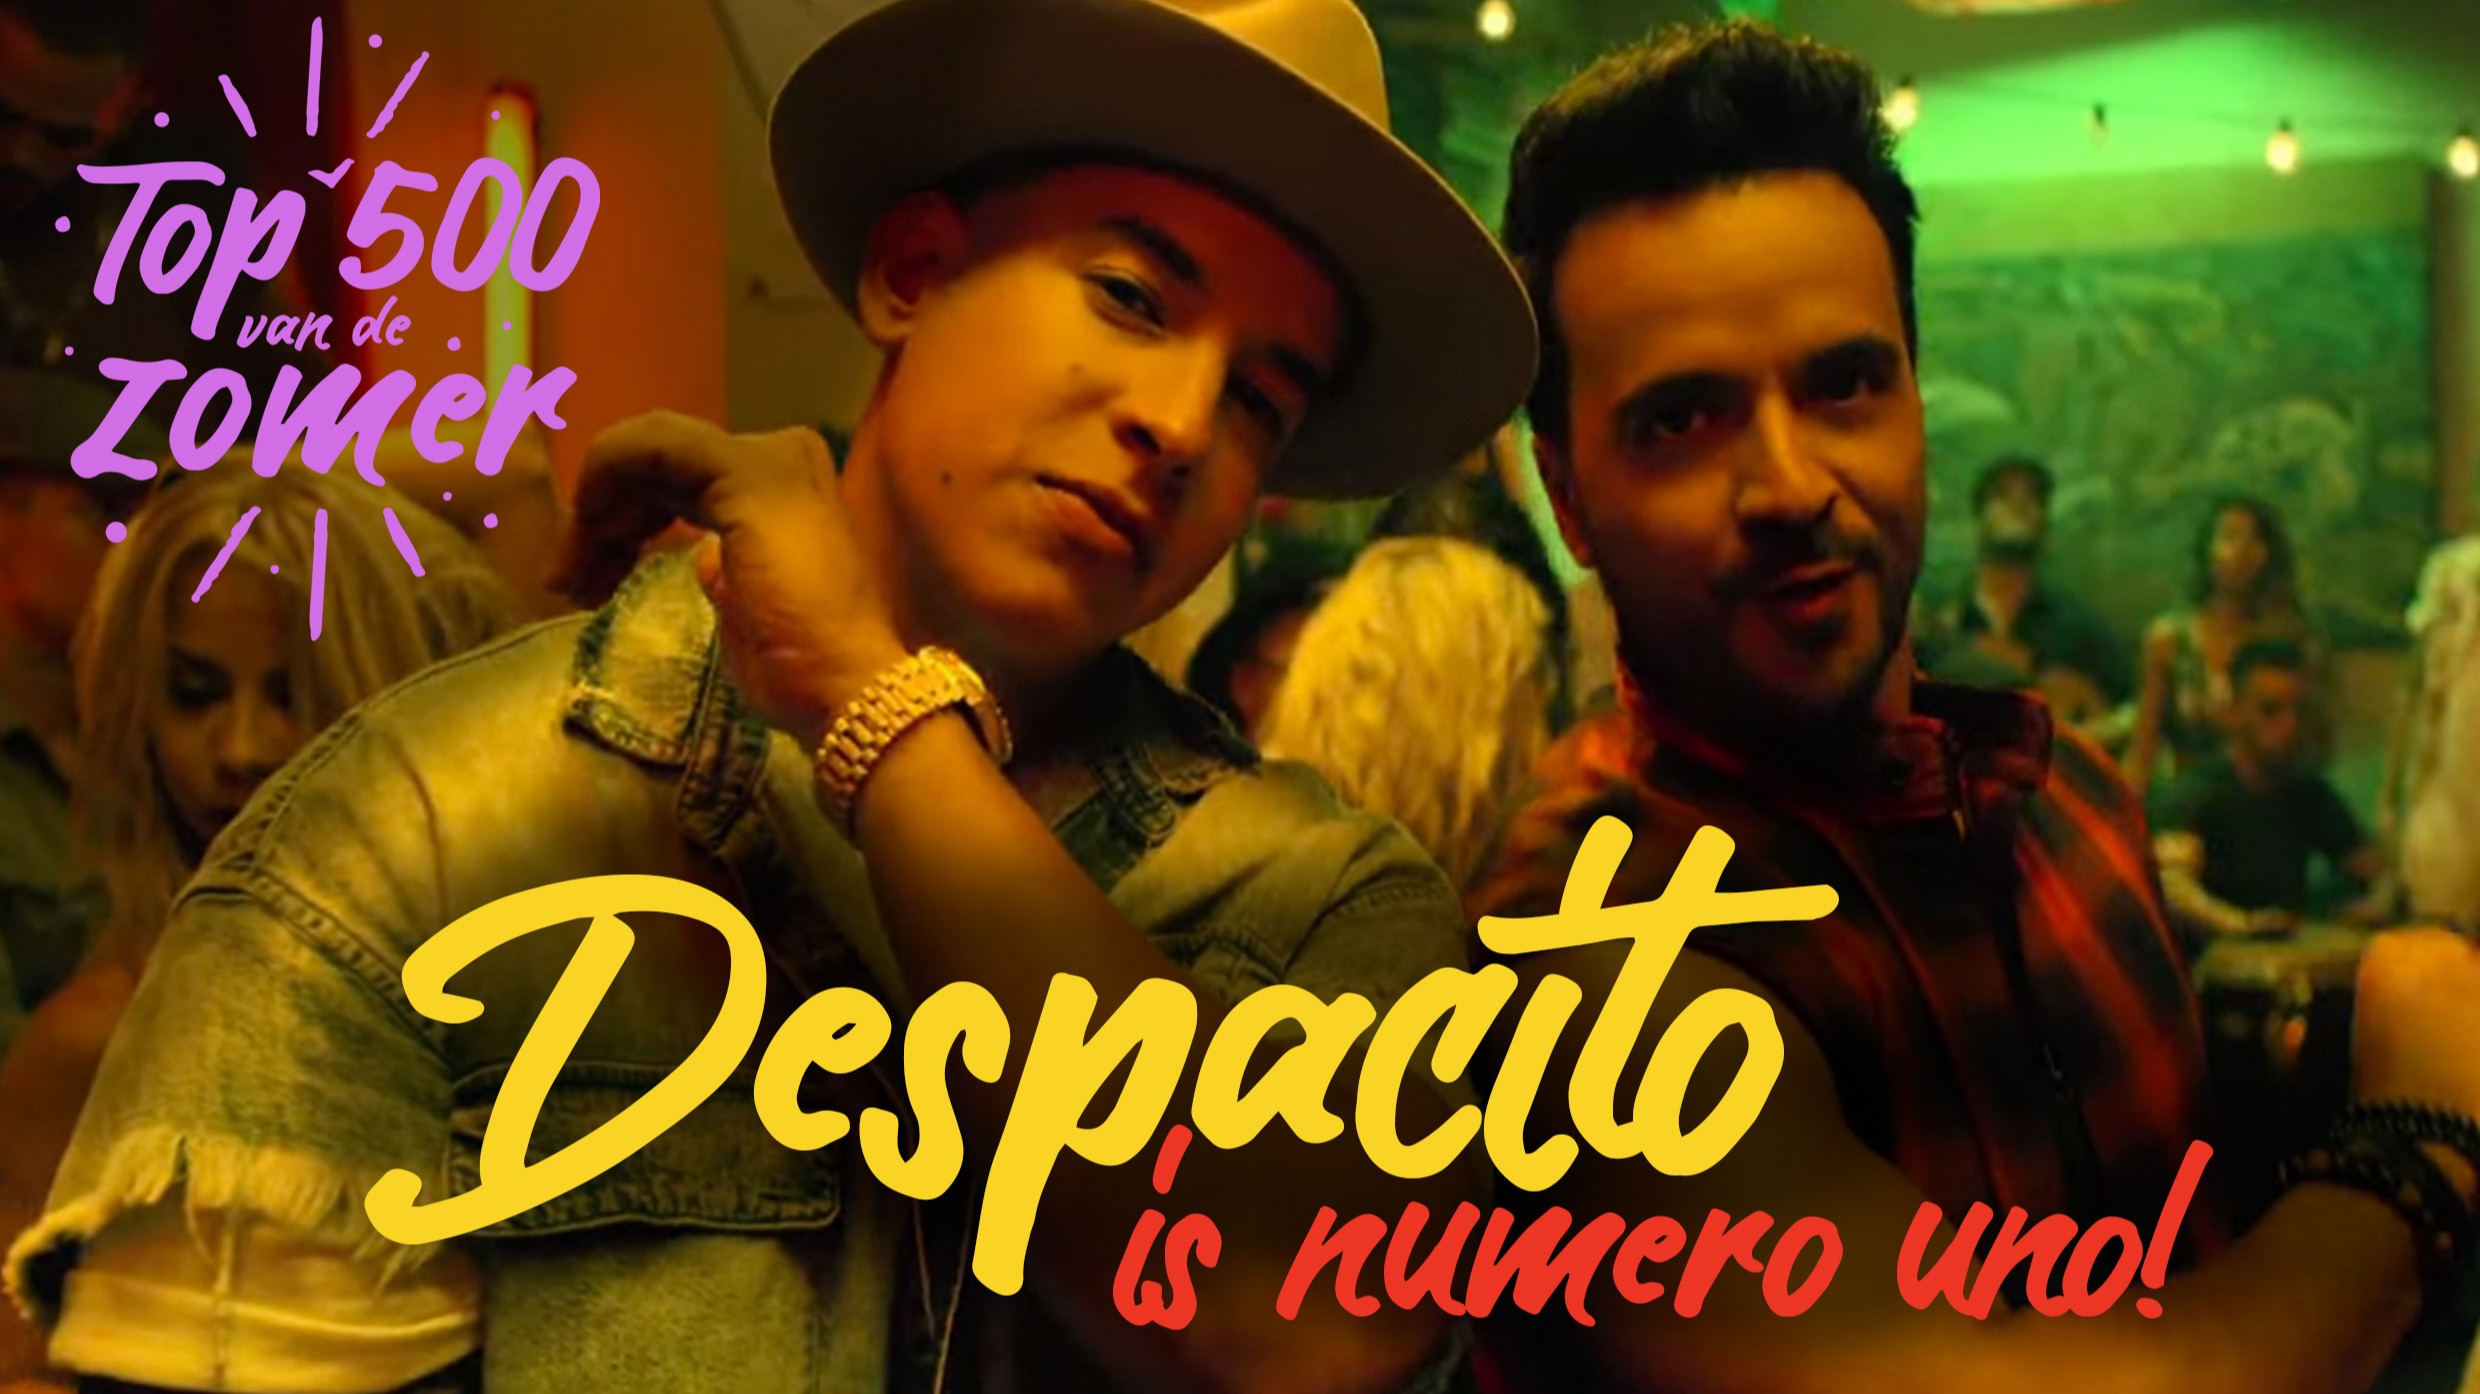 Despacito   top 500 van de  zomer  1 